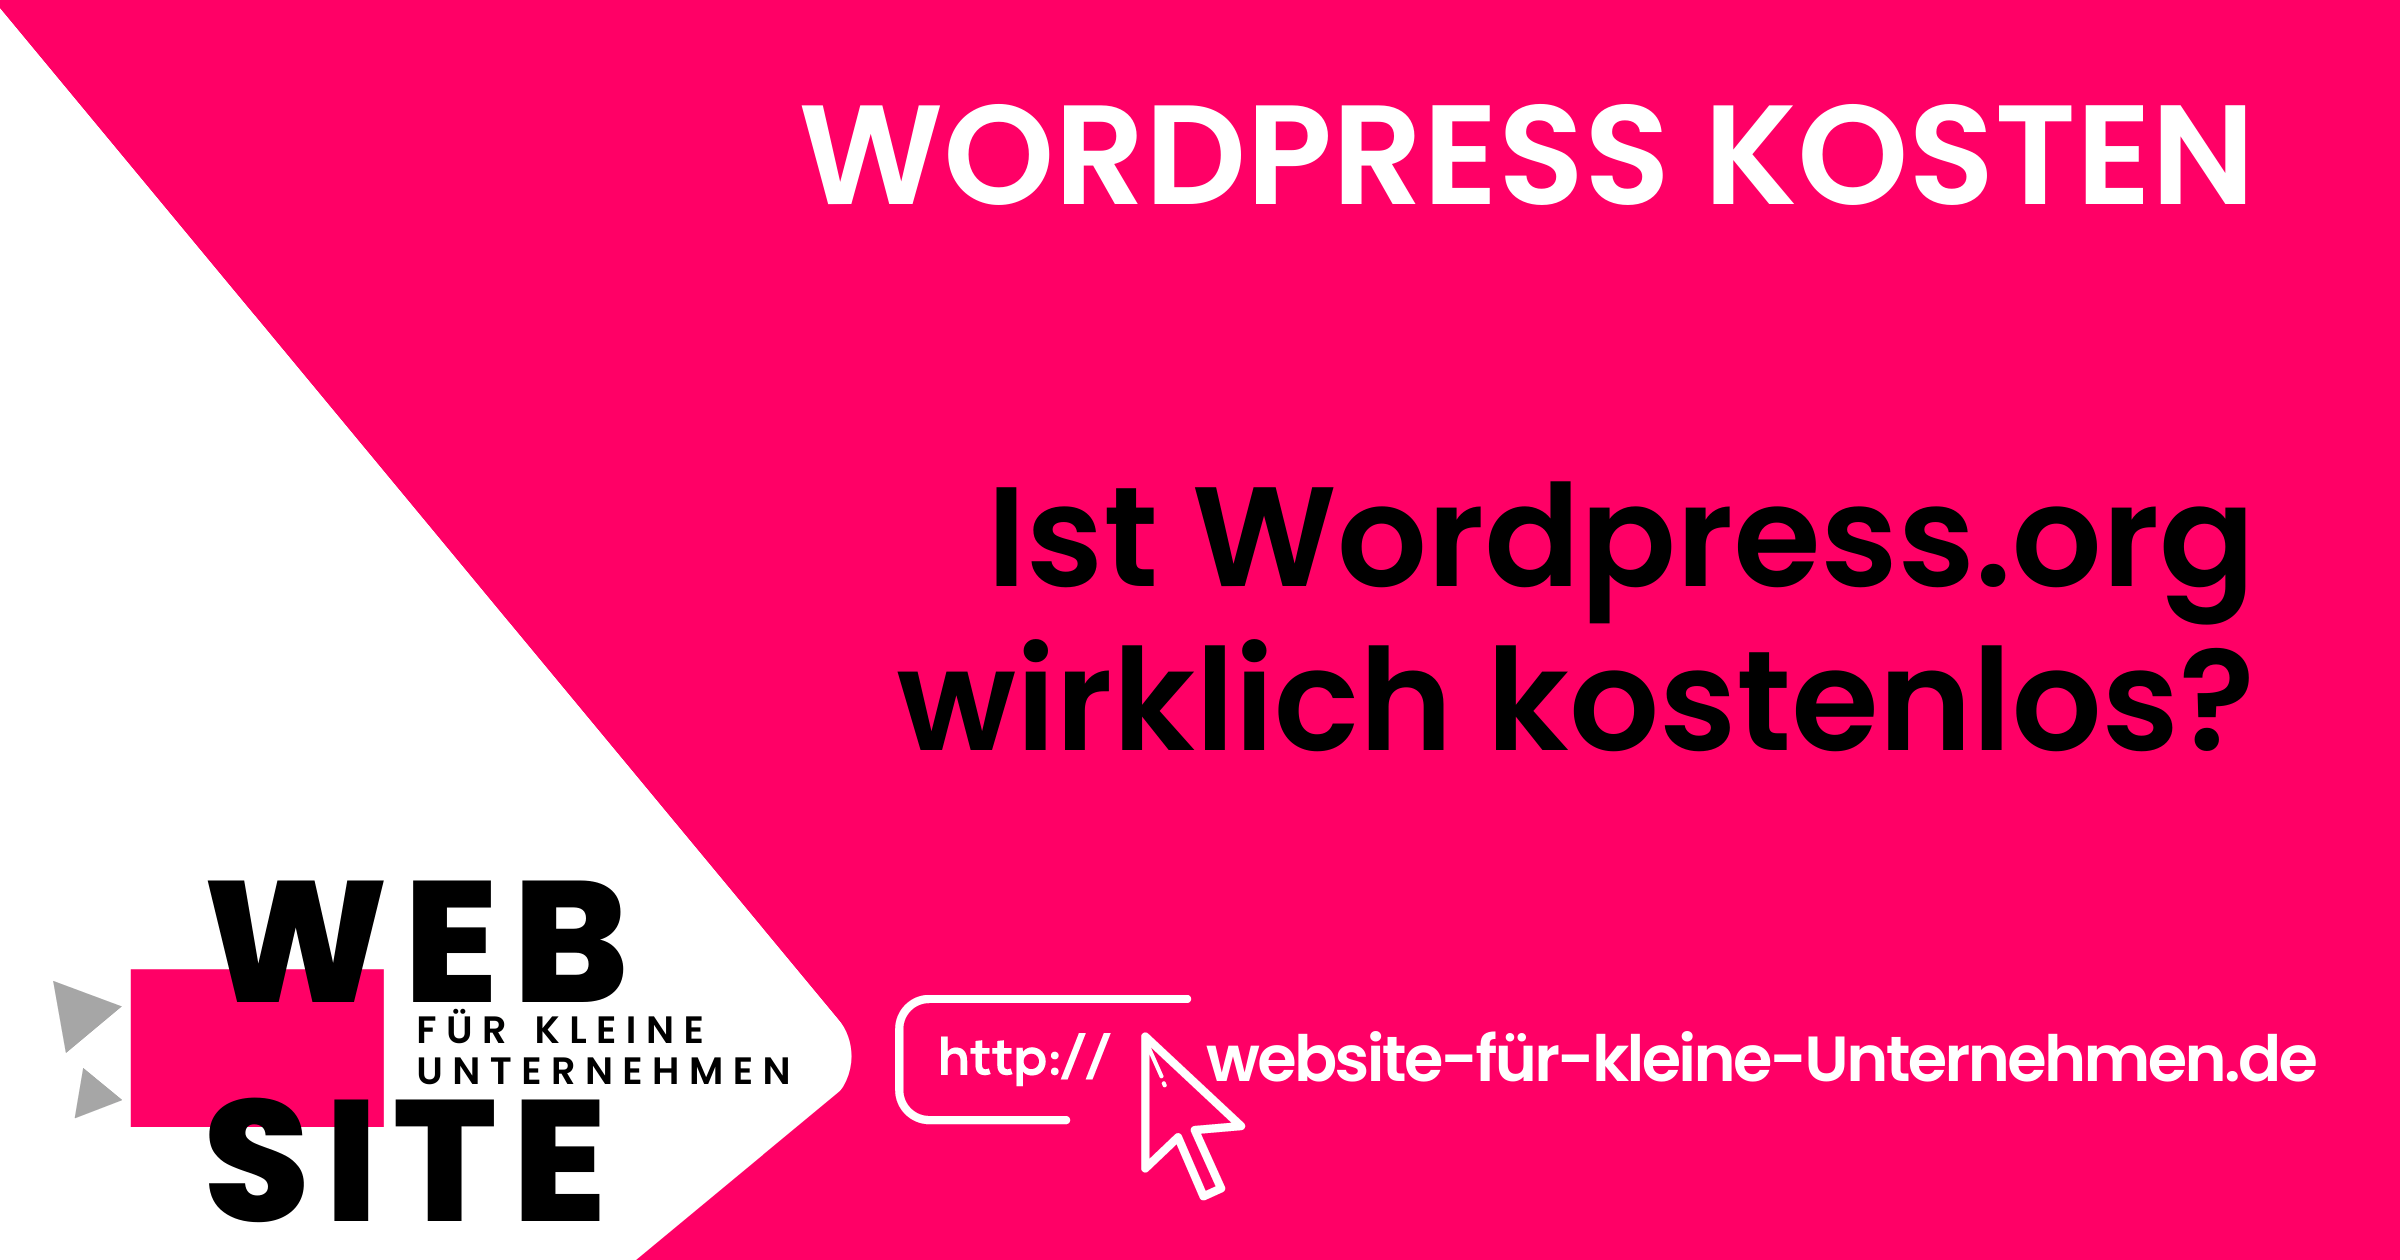 Wordpress Kosten - Website für kleine Unternehmen - WordPress.org wirklich kostenlos